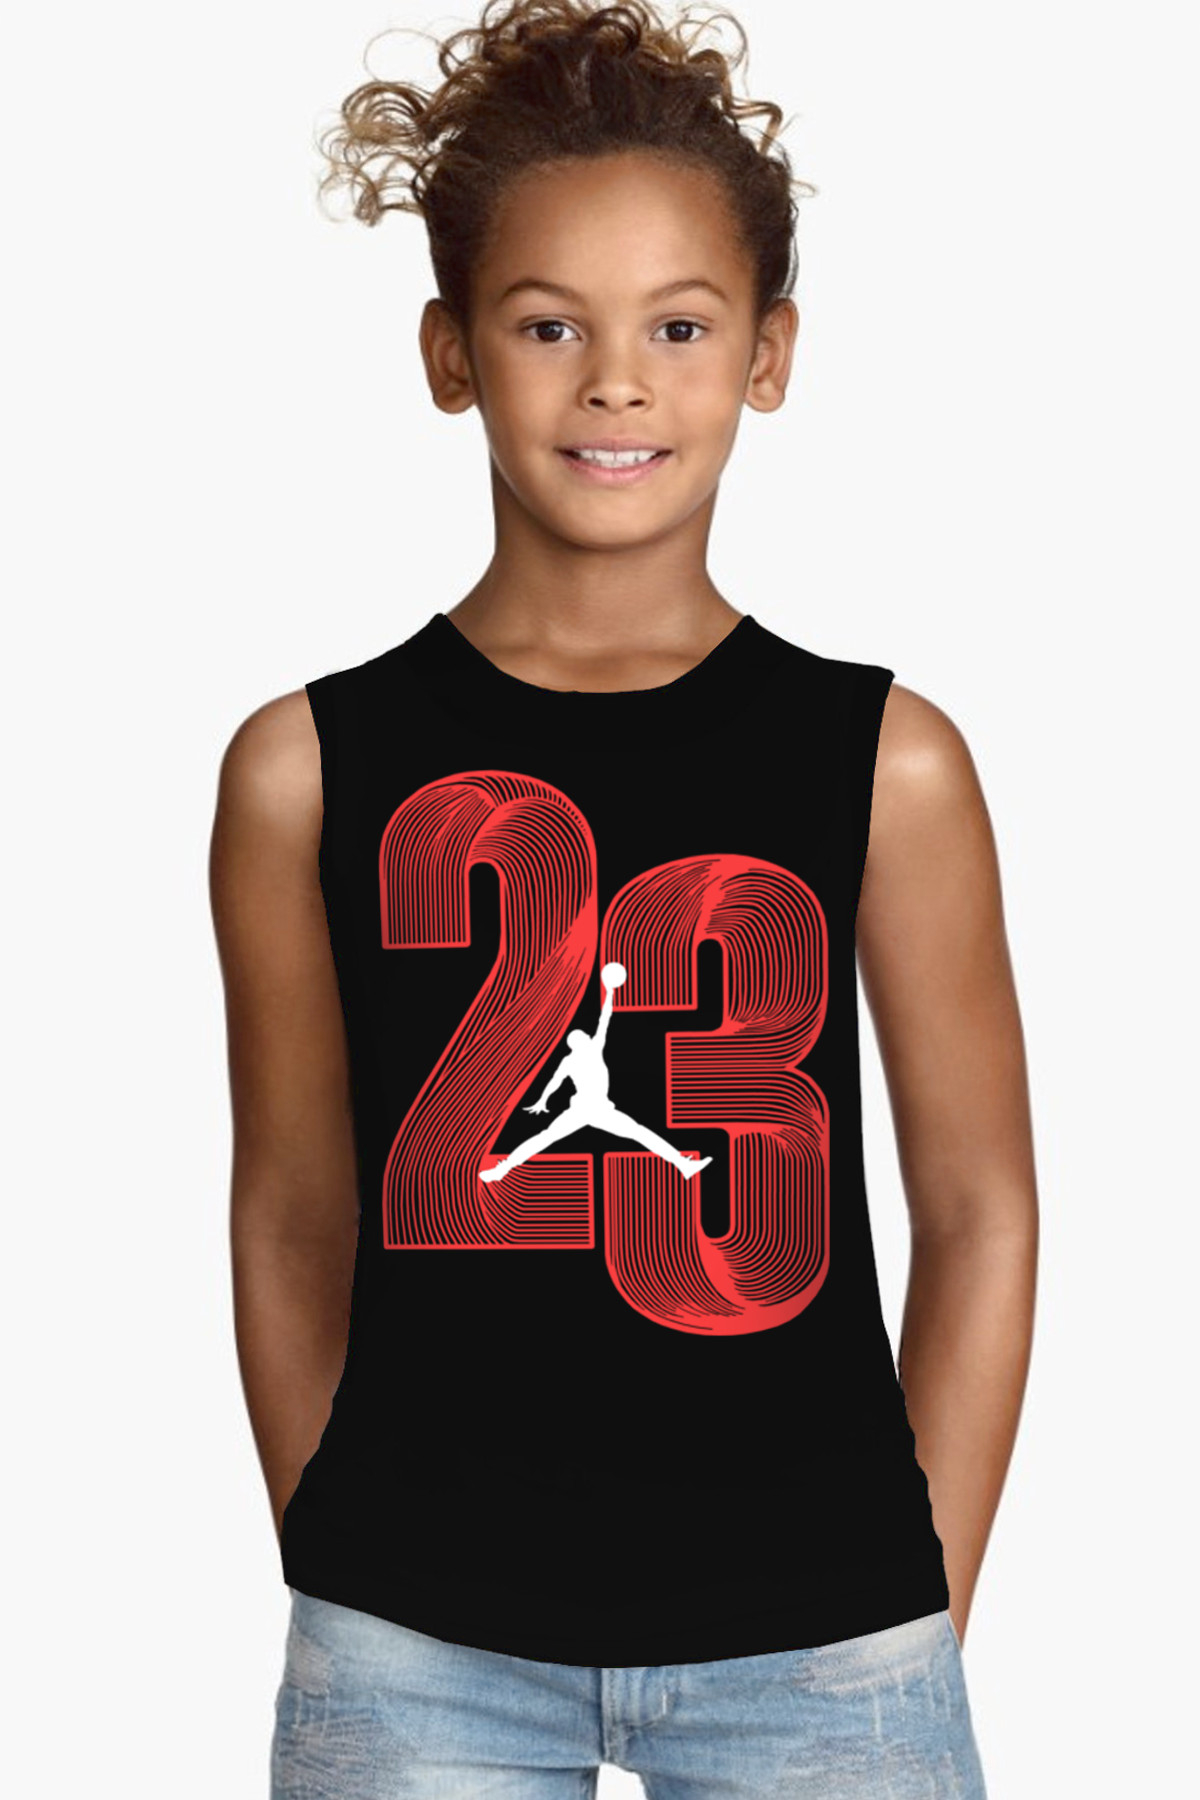 Yirmi Üç Siyah Kesik Kol | Kolsuz Çocuk T-shirt | Atlet